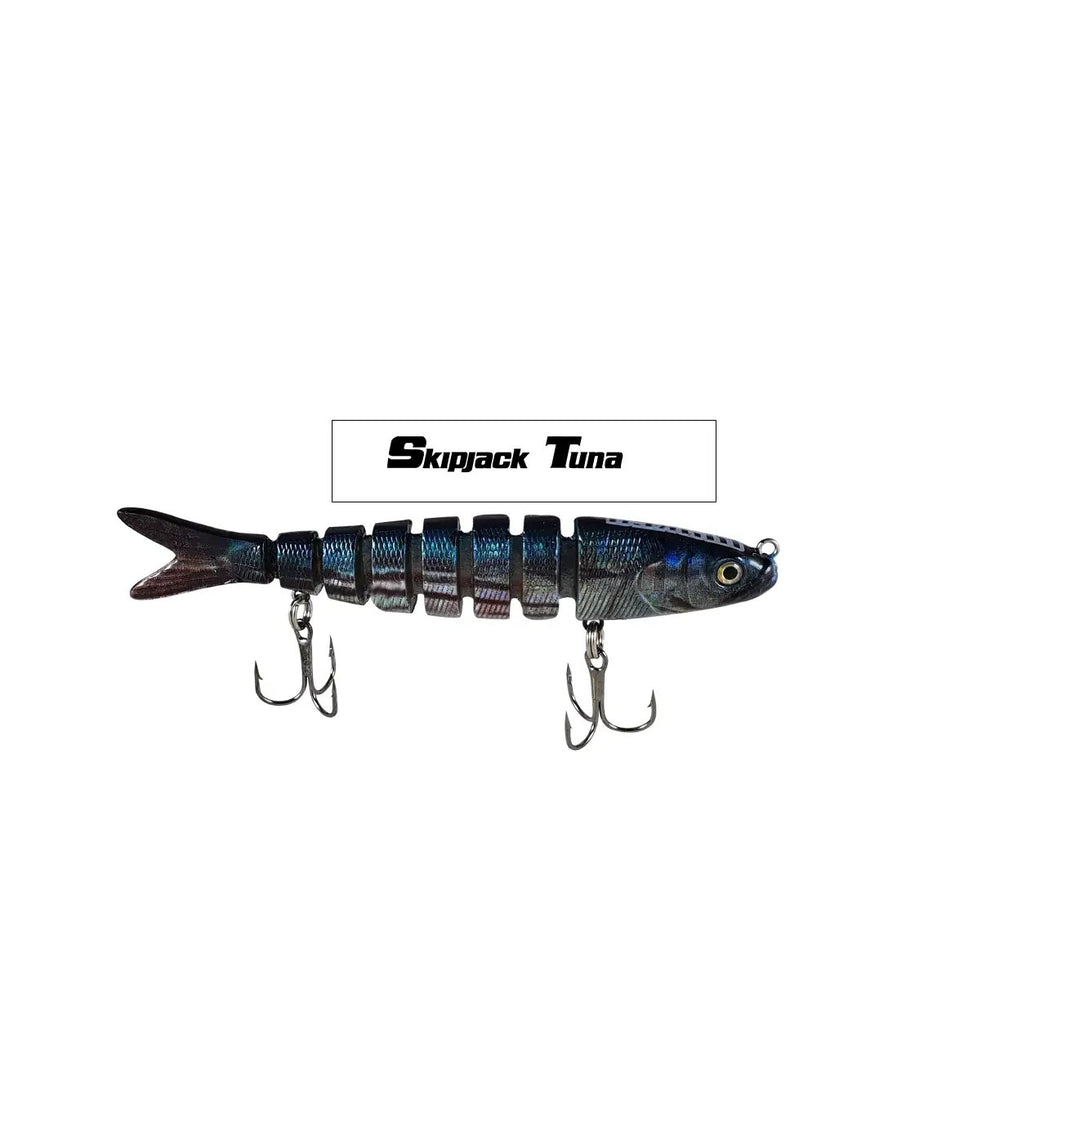 Skipjack Tuna 3.5 inch Micro Motion Minnow Swimbait Fishing Lure